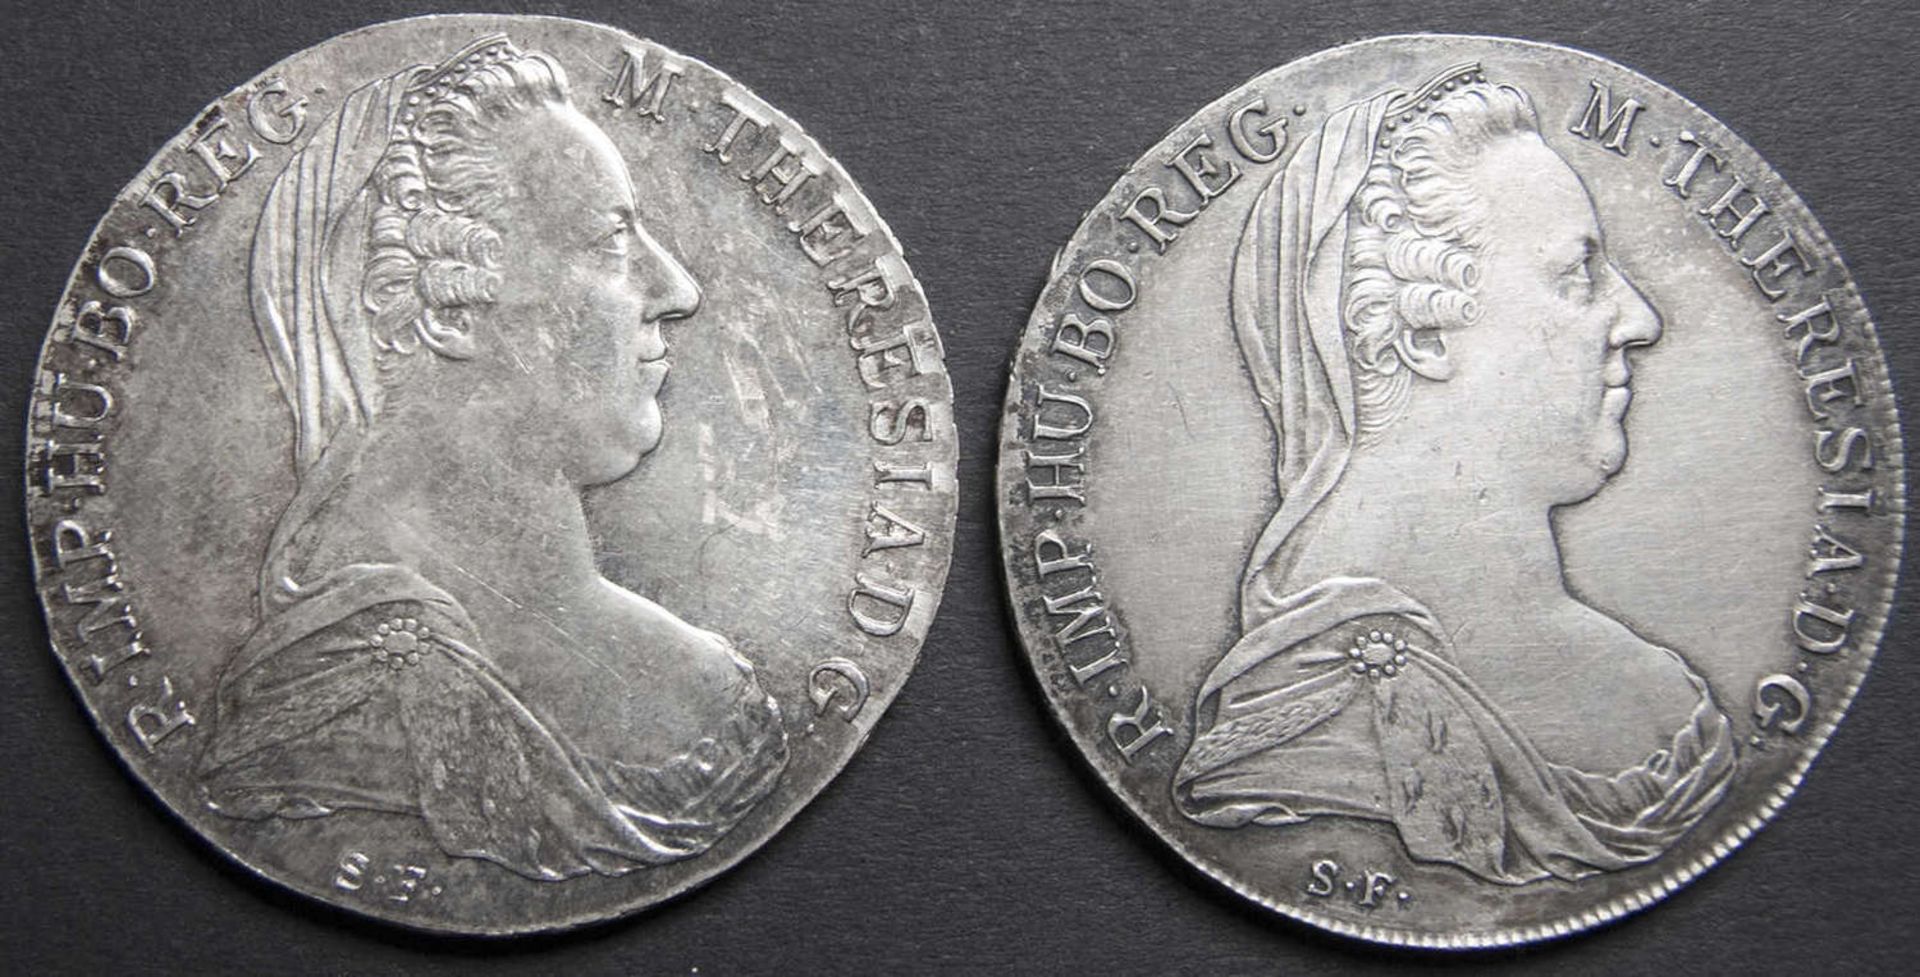 Österreich 1780, zwei Maria Theresien - Taler. Silber. Gesamtgewicht: ca. 56,2 g.